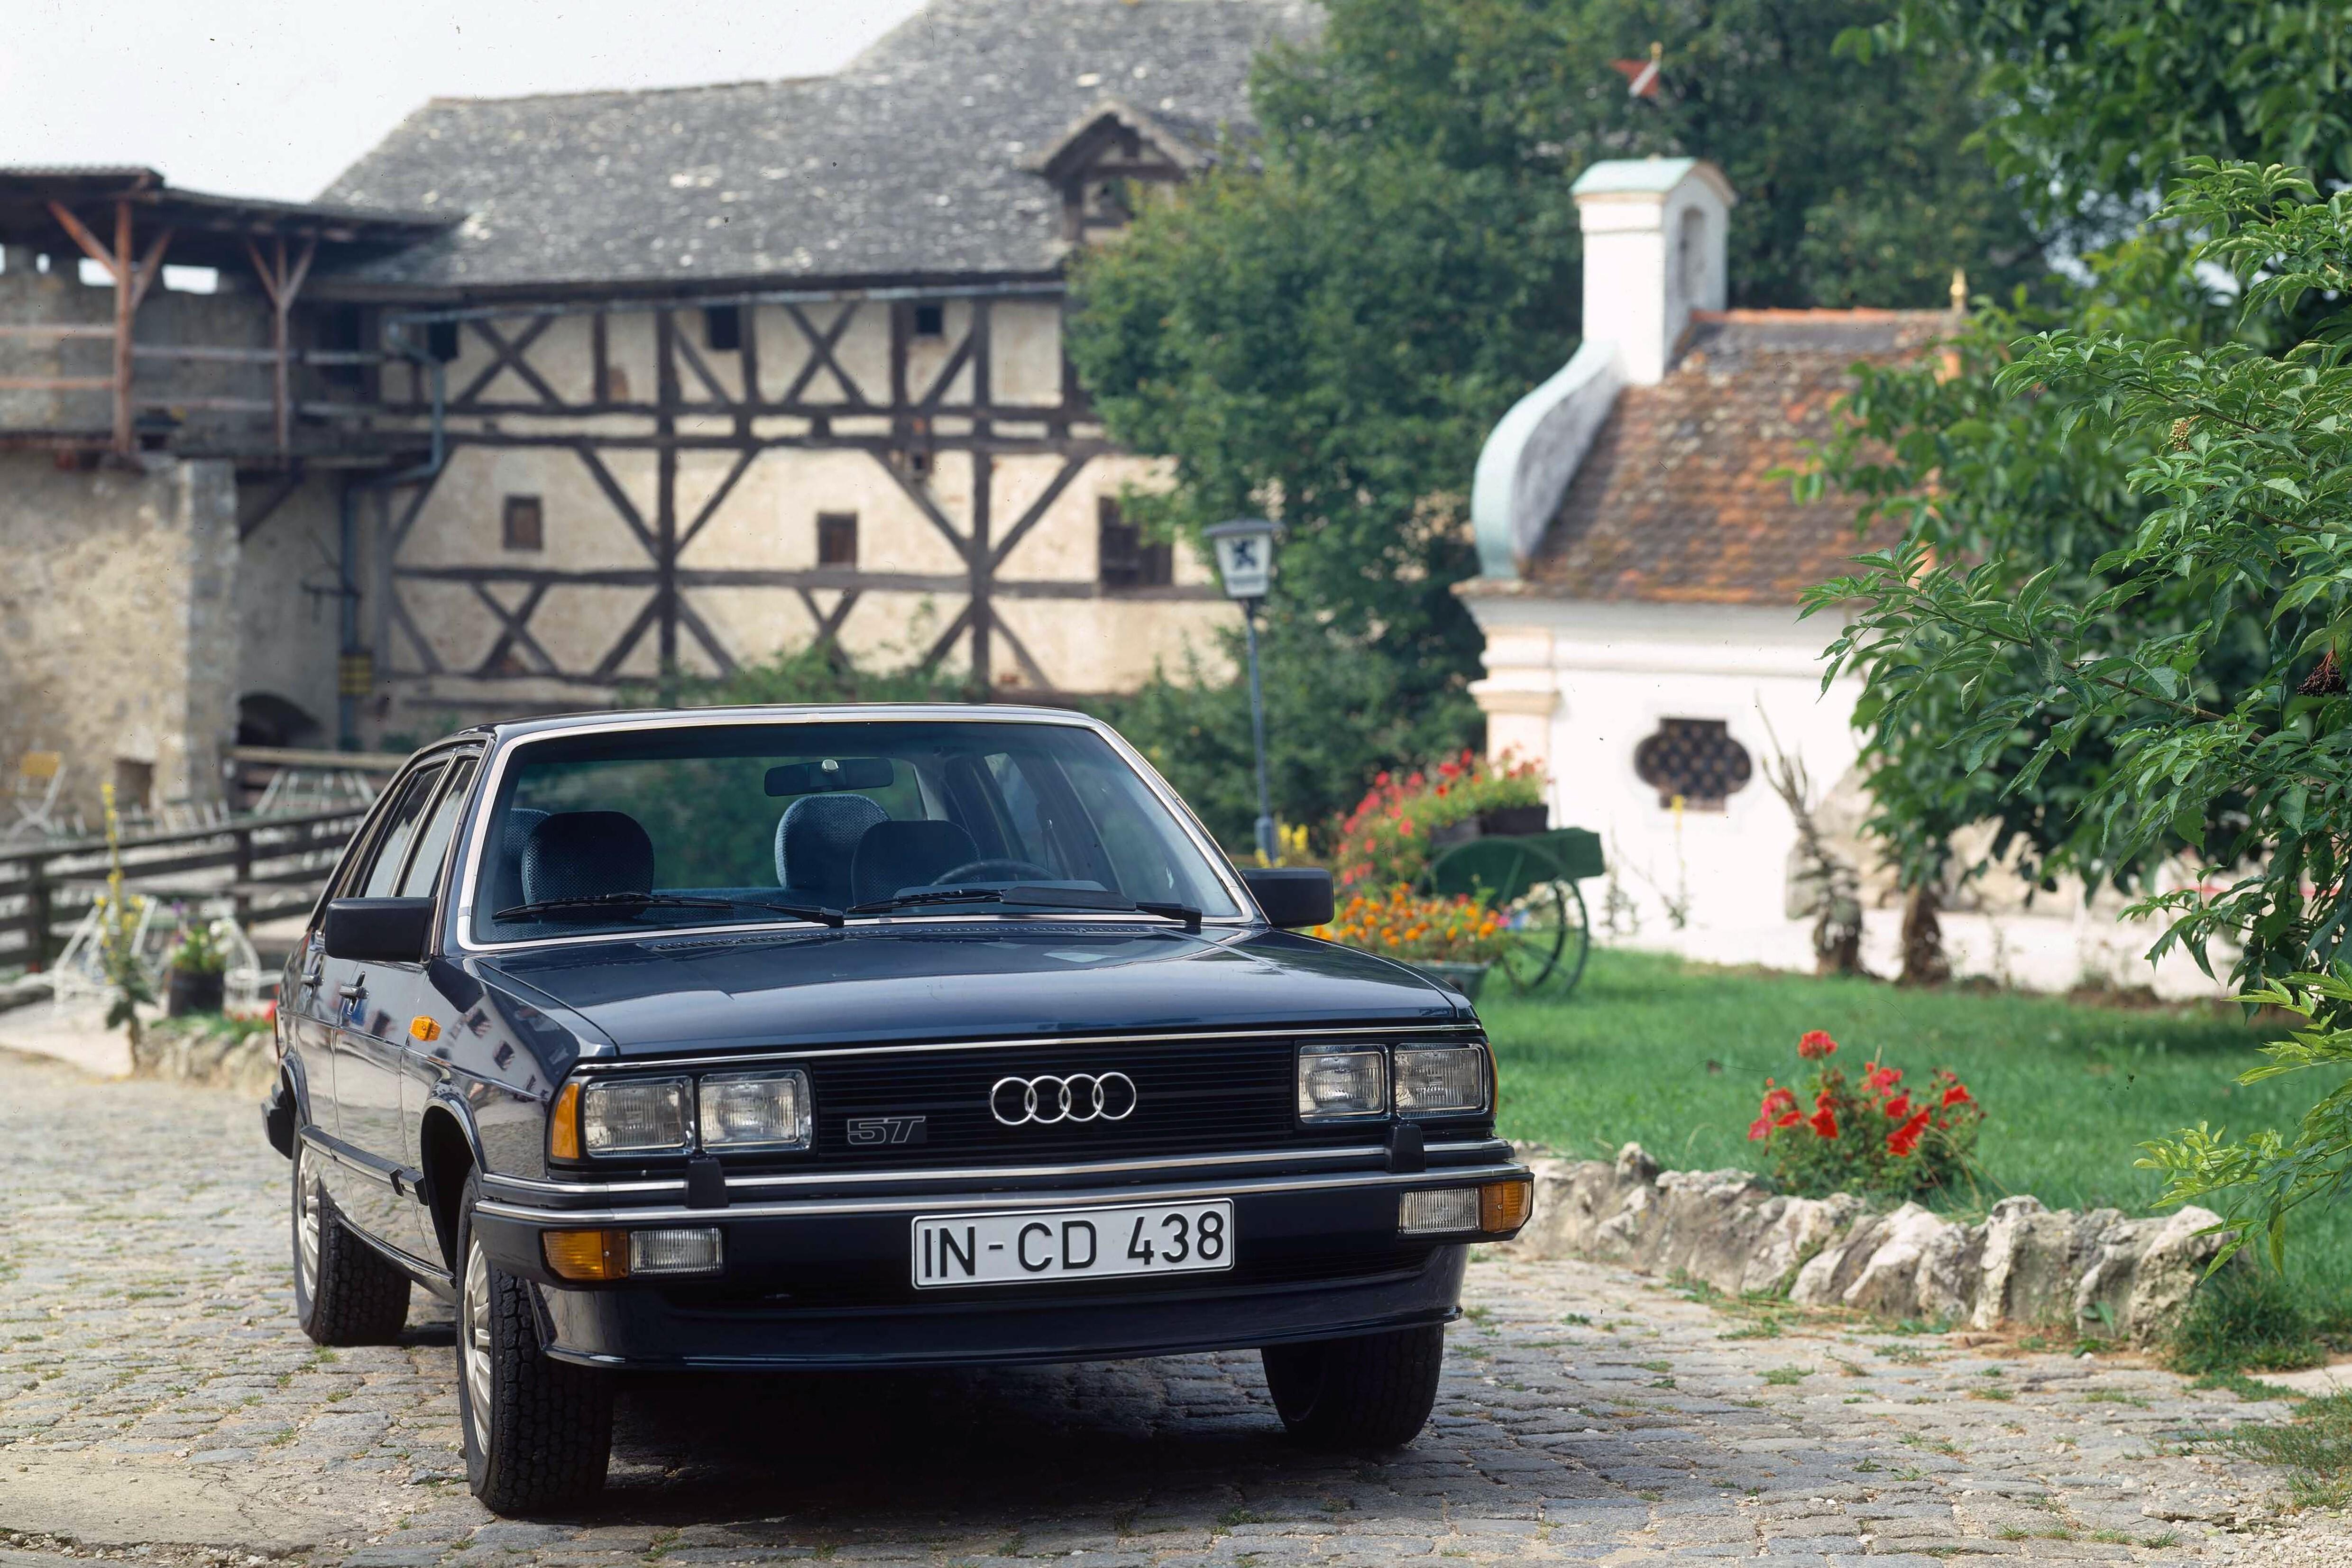 Ауди первого поколения. Ауди Ауди 200. Audi 200 5t. "Audi" "200" "1983" VW. "Audi" "200" "1979" l.